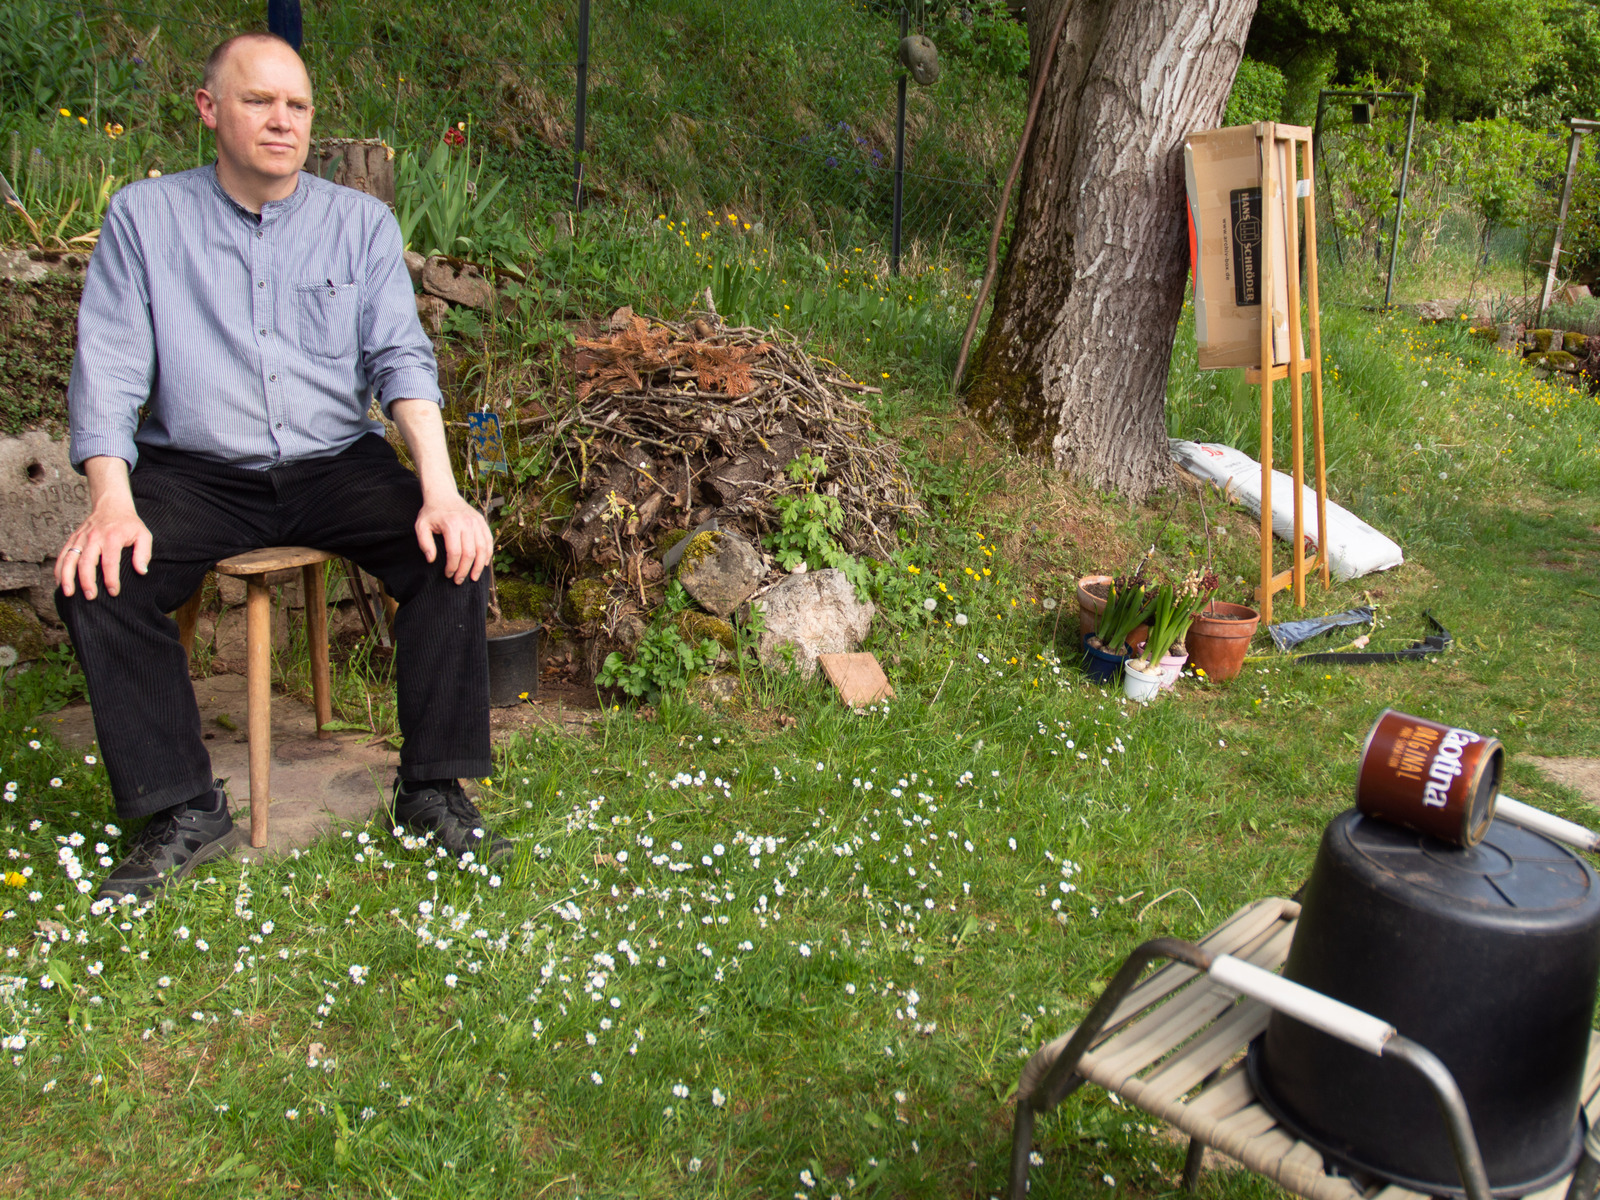 © Martin Frech: Selbstportrait einer Selbstportrait-Sitzung mit der Caotina-Cam, der selbstgebauten Lochkamera